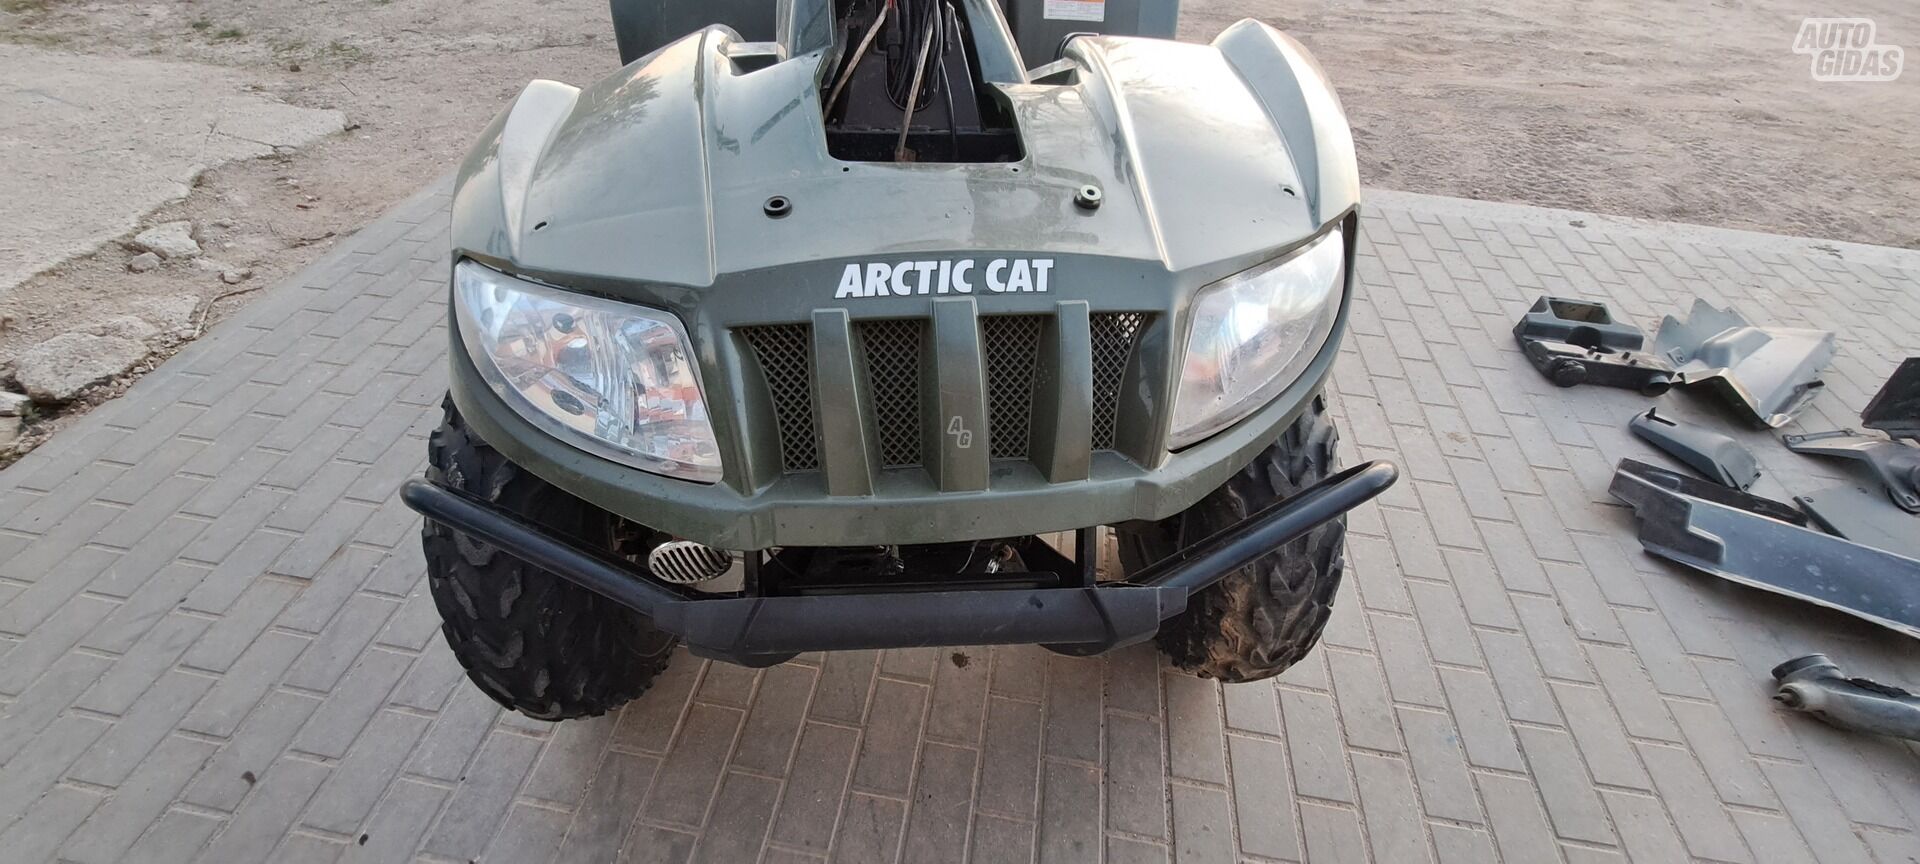 ATV Arctic Cat 650 parts